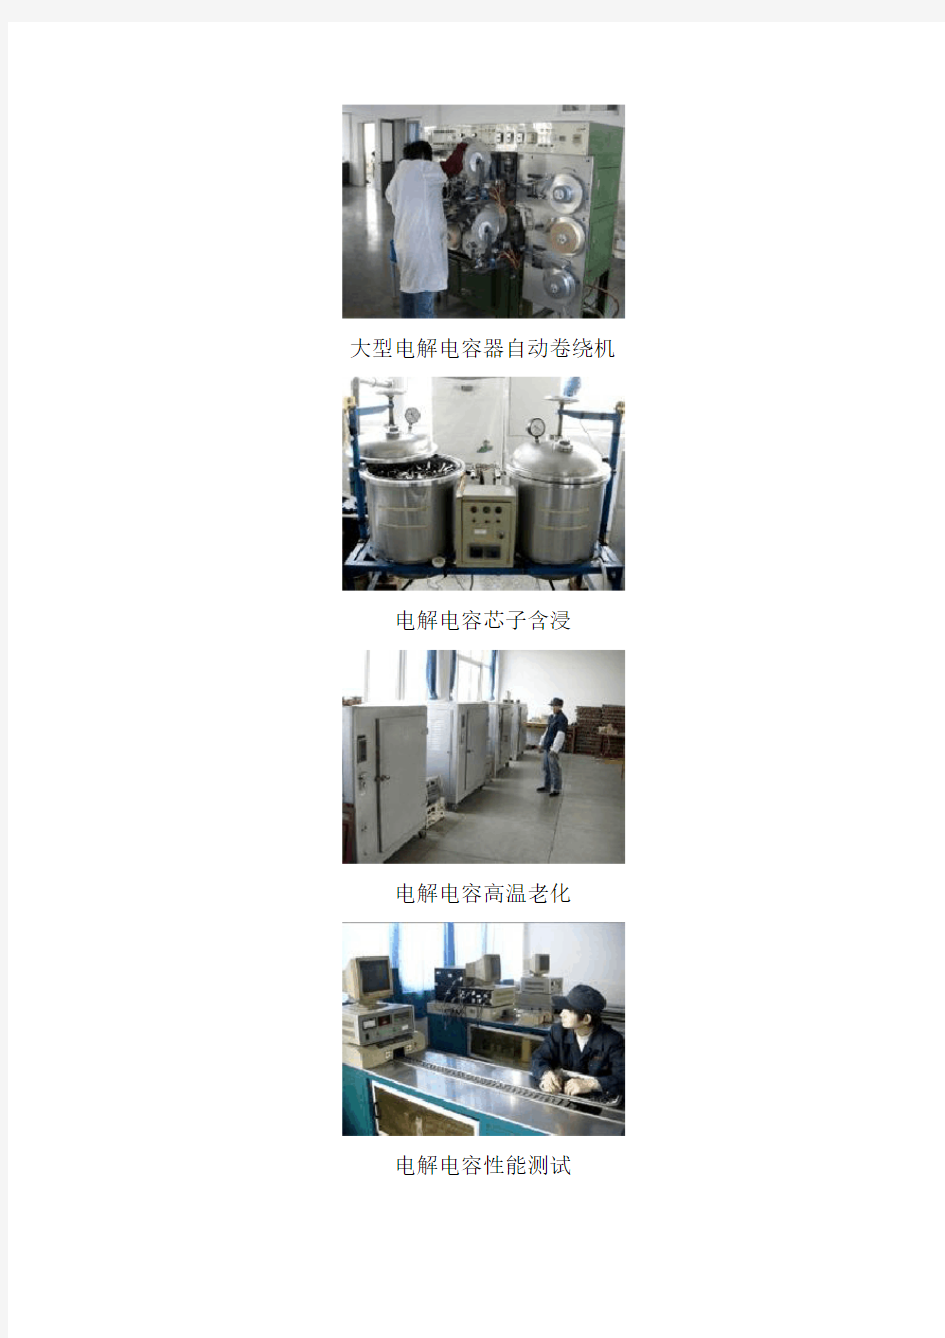 铝电解电容器生产工艺流程